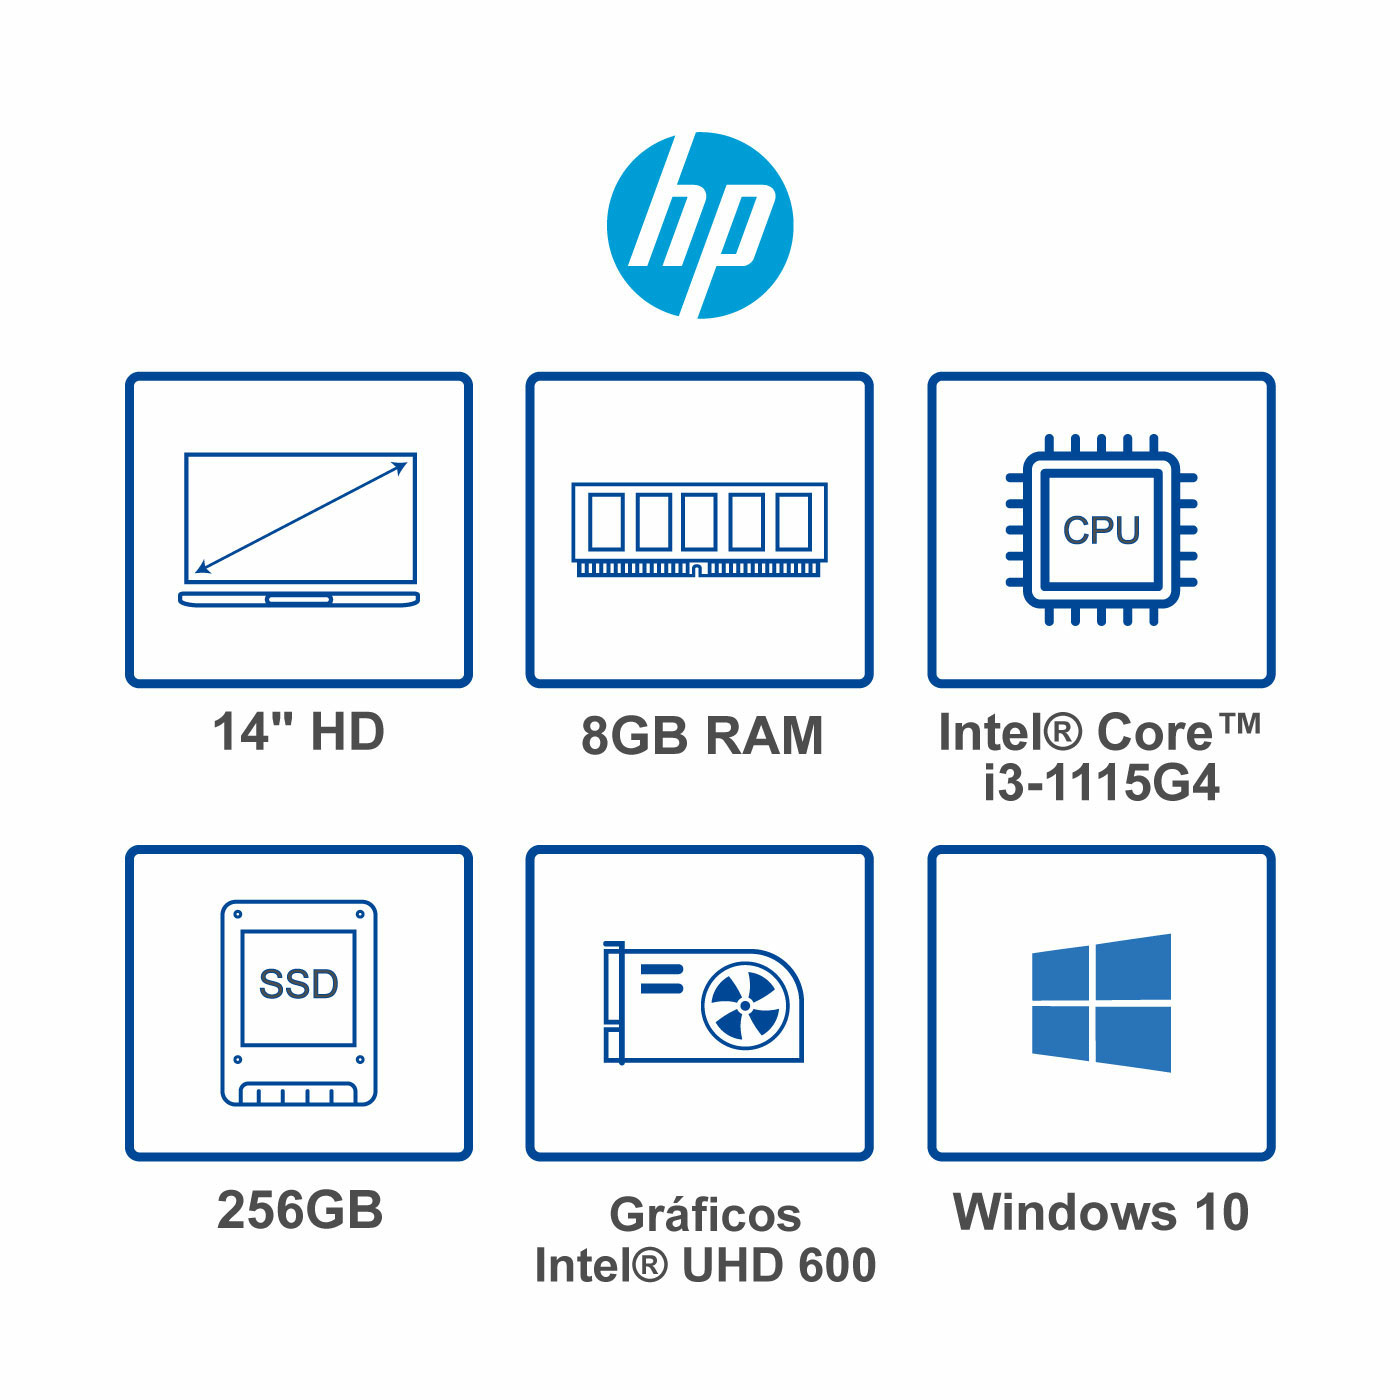 Computador Portátil HP 14" Pulgadas dq2022la - Intel Core i3 - RAM 8GB - Disco SSD 256 GB - Plata Natural